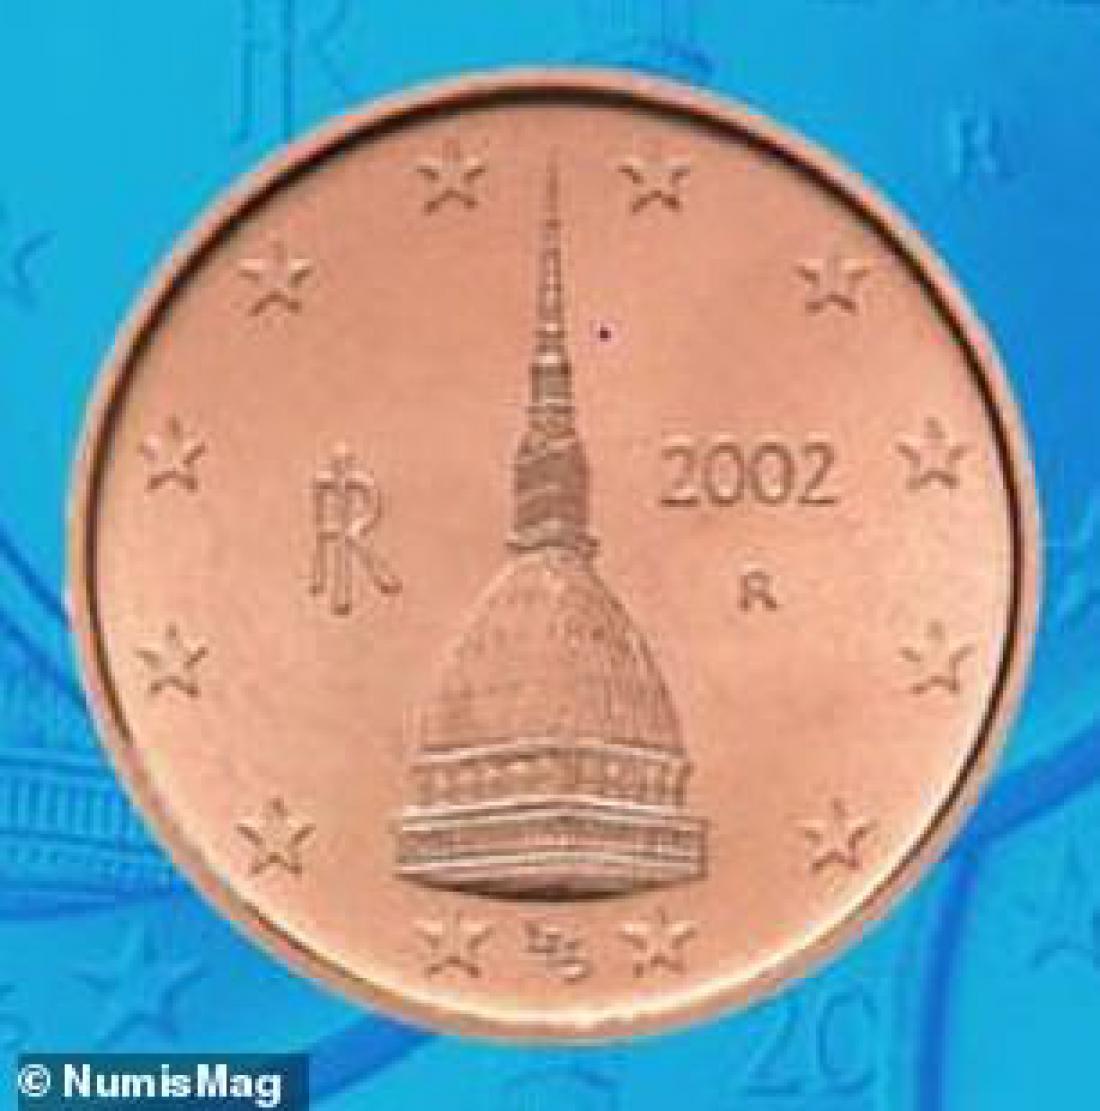 Če ta znak najdete na kovancu za 1 cent, je zbirateljski in ima lahko visoko vrednost, sicer pa se pojavlja na kovancu za 2 centa in je tudi vreden le 2 centa.